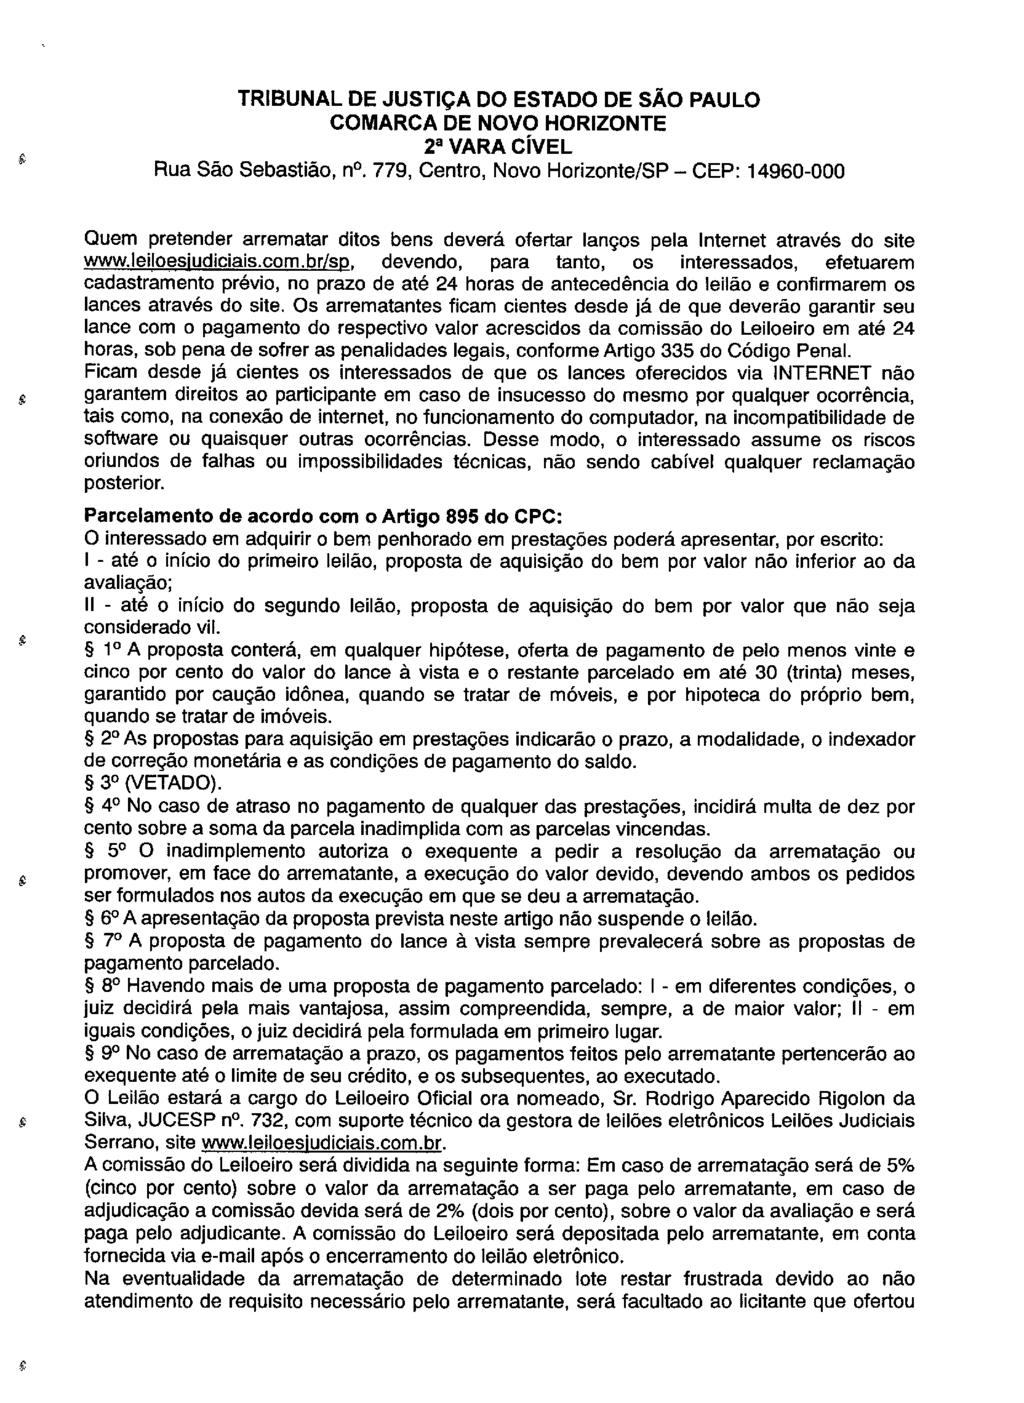 fls. 82 Este documento é cópia do original, assinado digitalmente por LUZIA REGIS DE OLIVEIRA DUARTE, liberado nos autos em 30/04/2019 às 14:47.